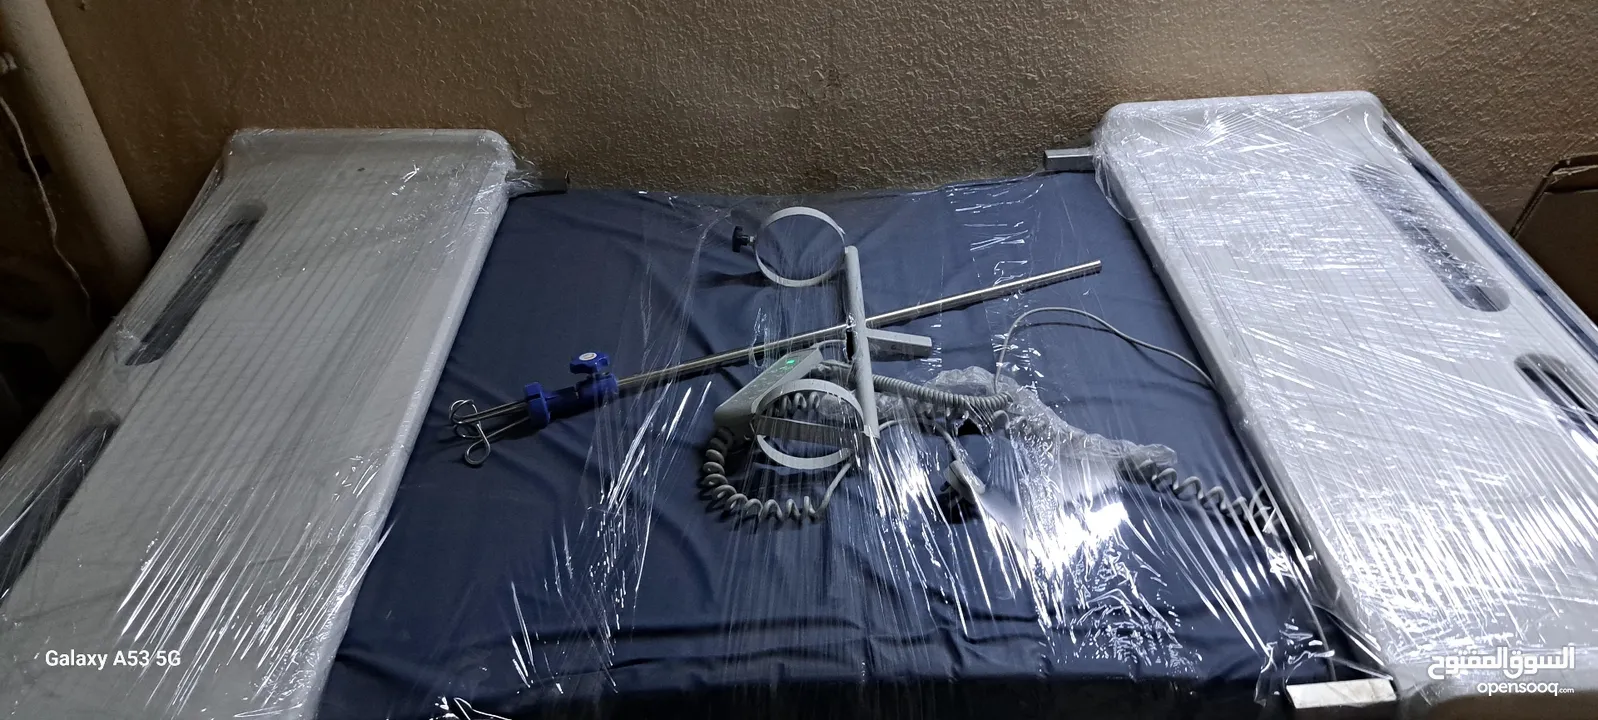 سرير طبي كهرباي معا مرتبه طبيه يعمل بريموت 10حركات